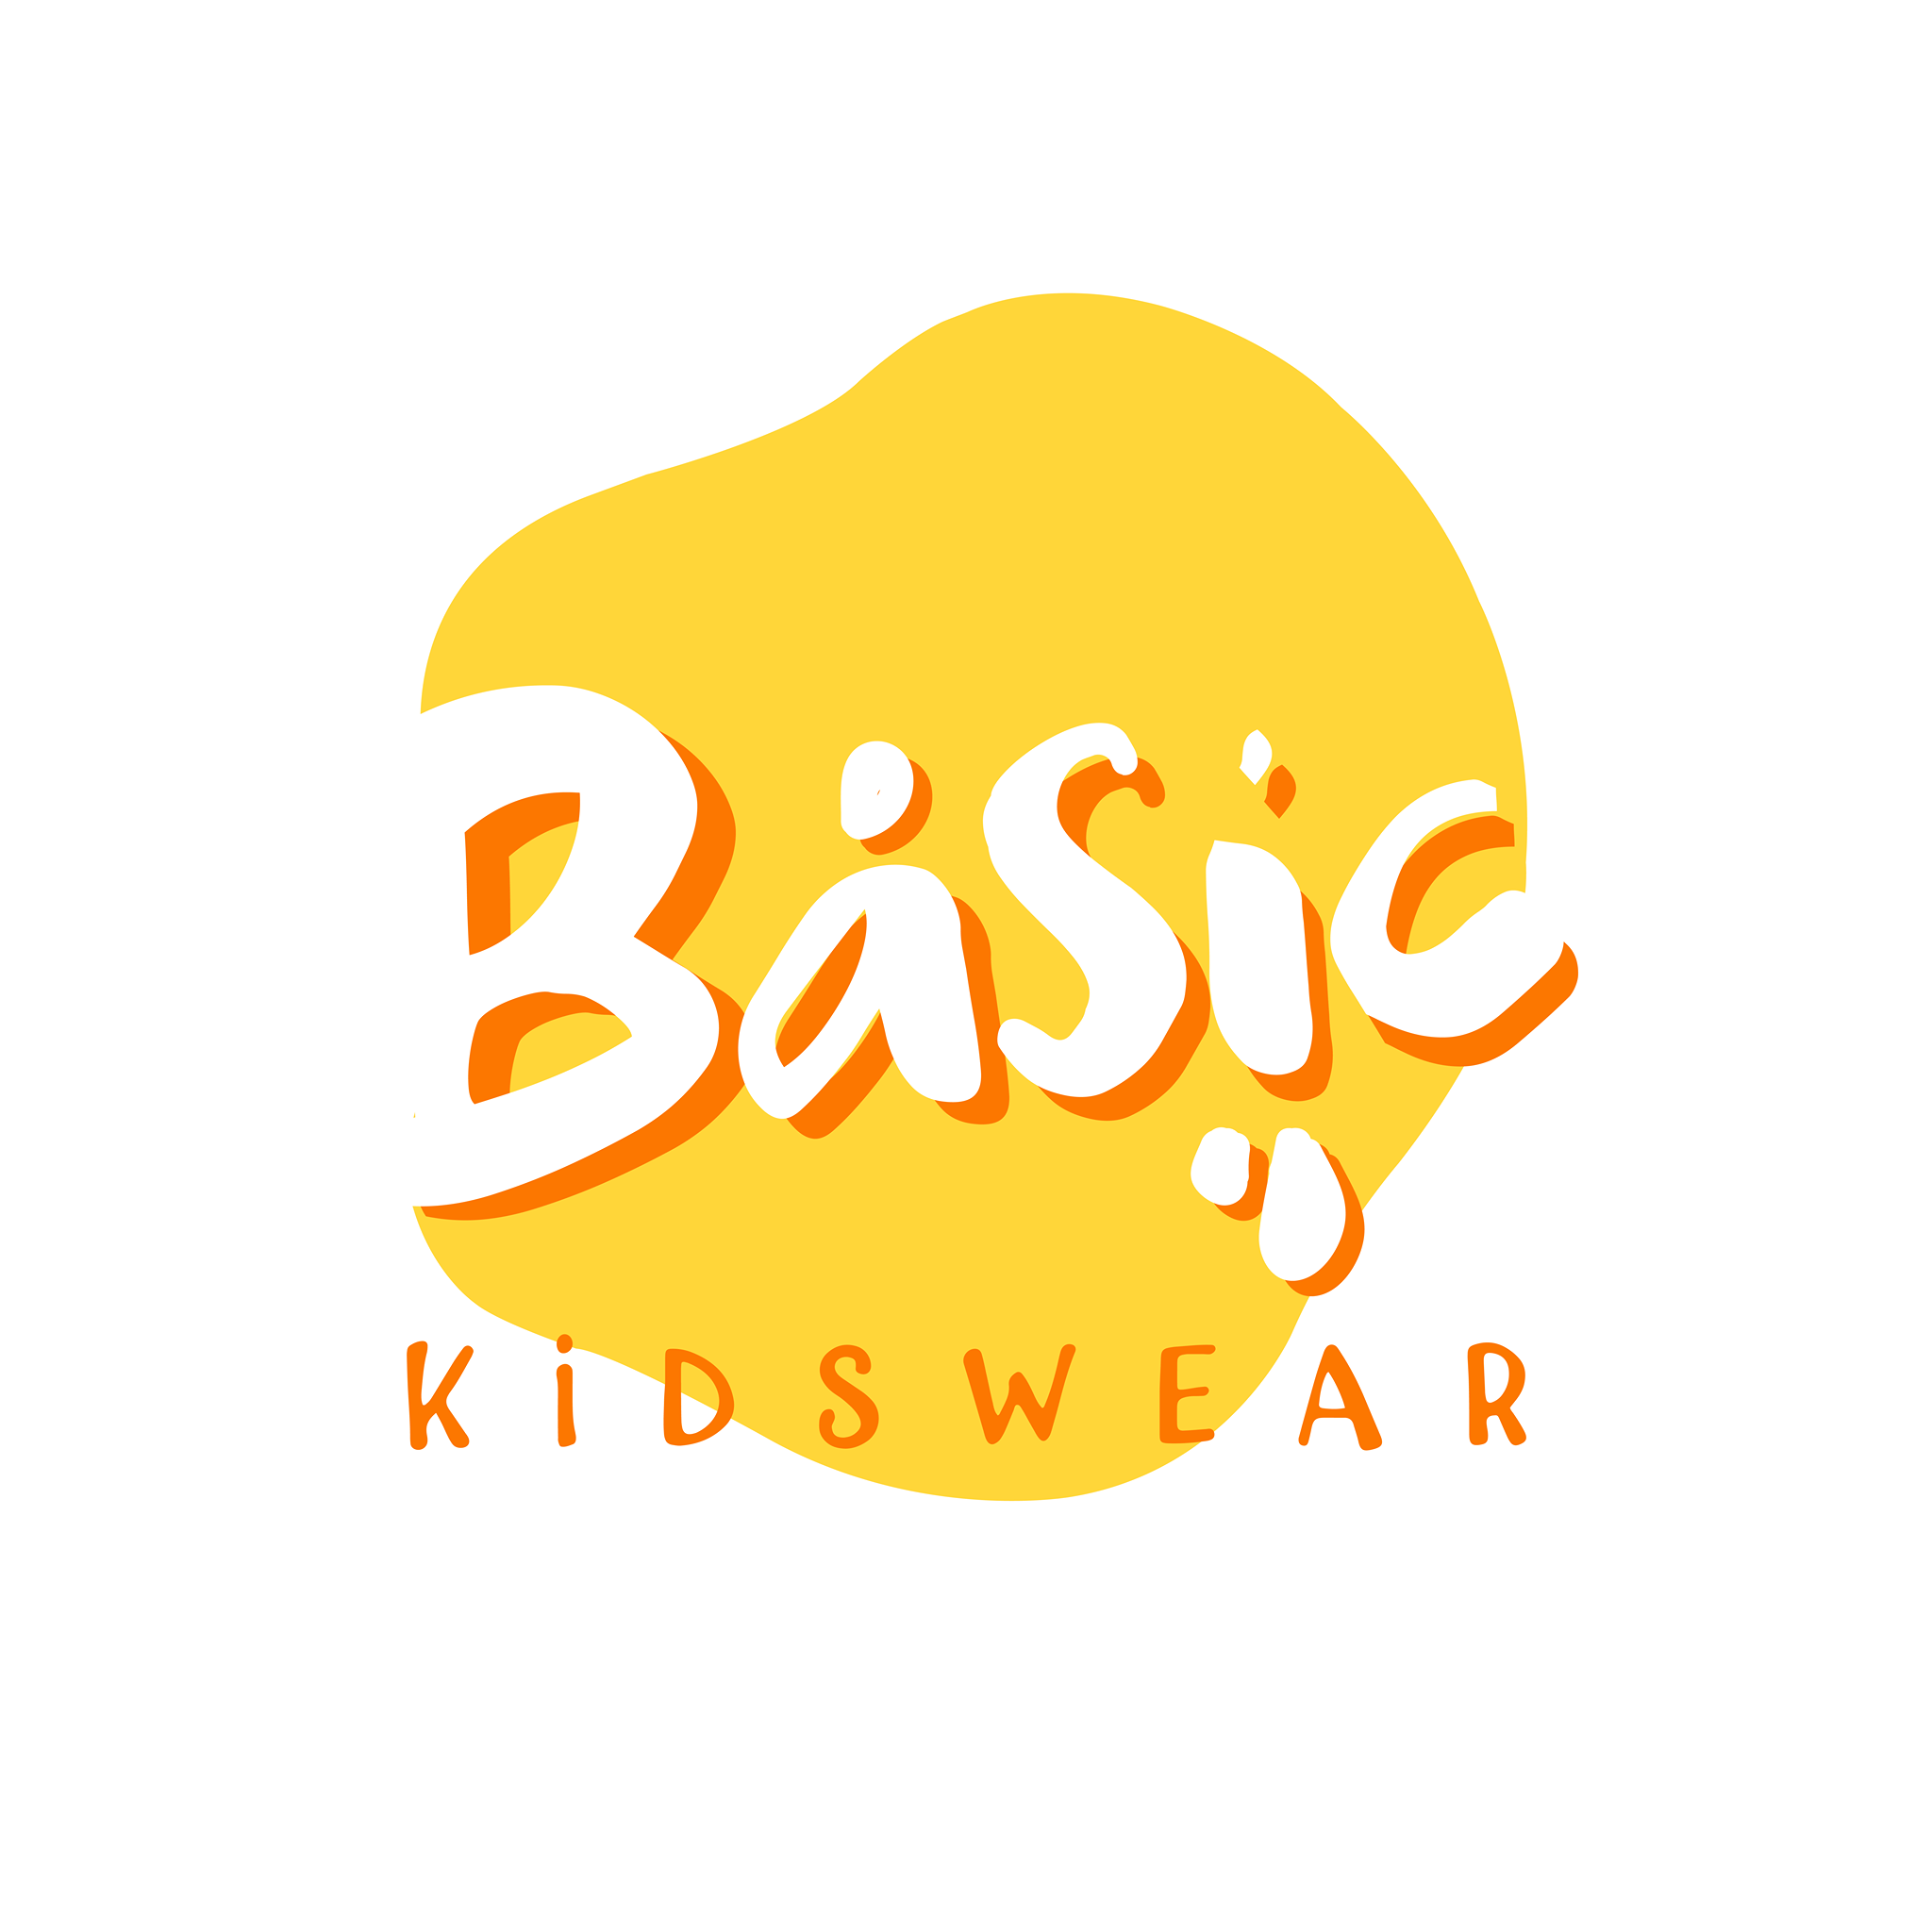 بيزك كيدز وير Basic Kidswear